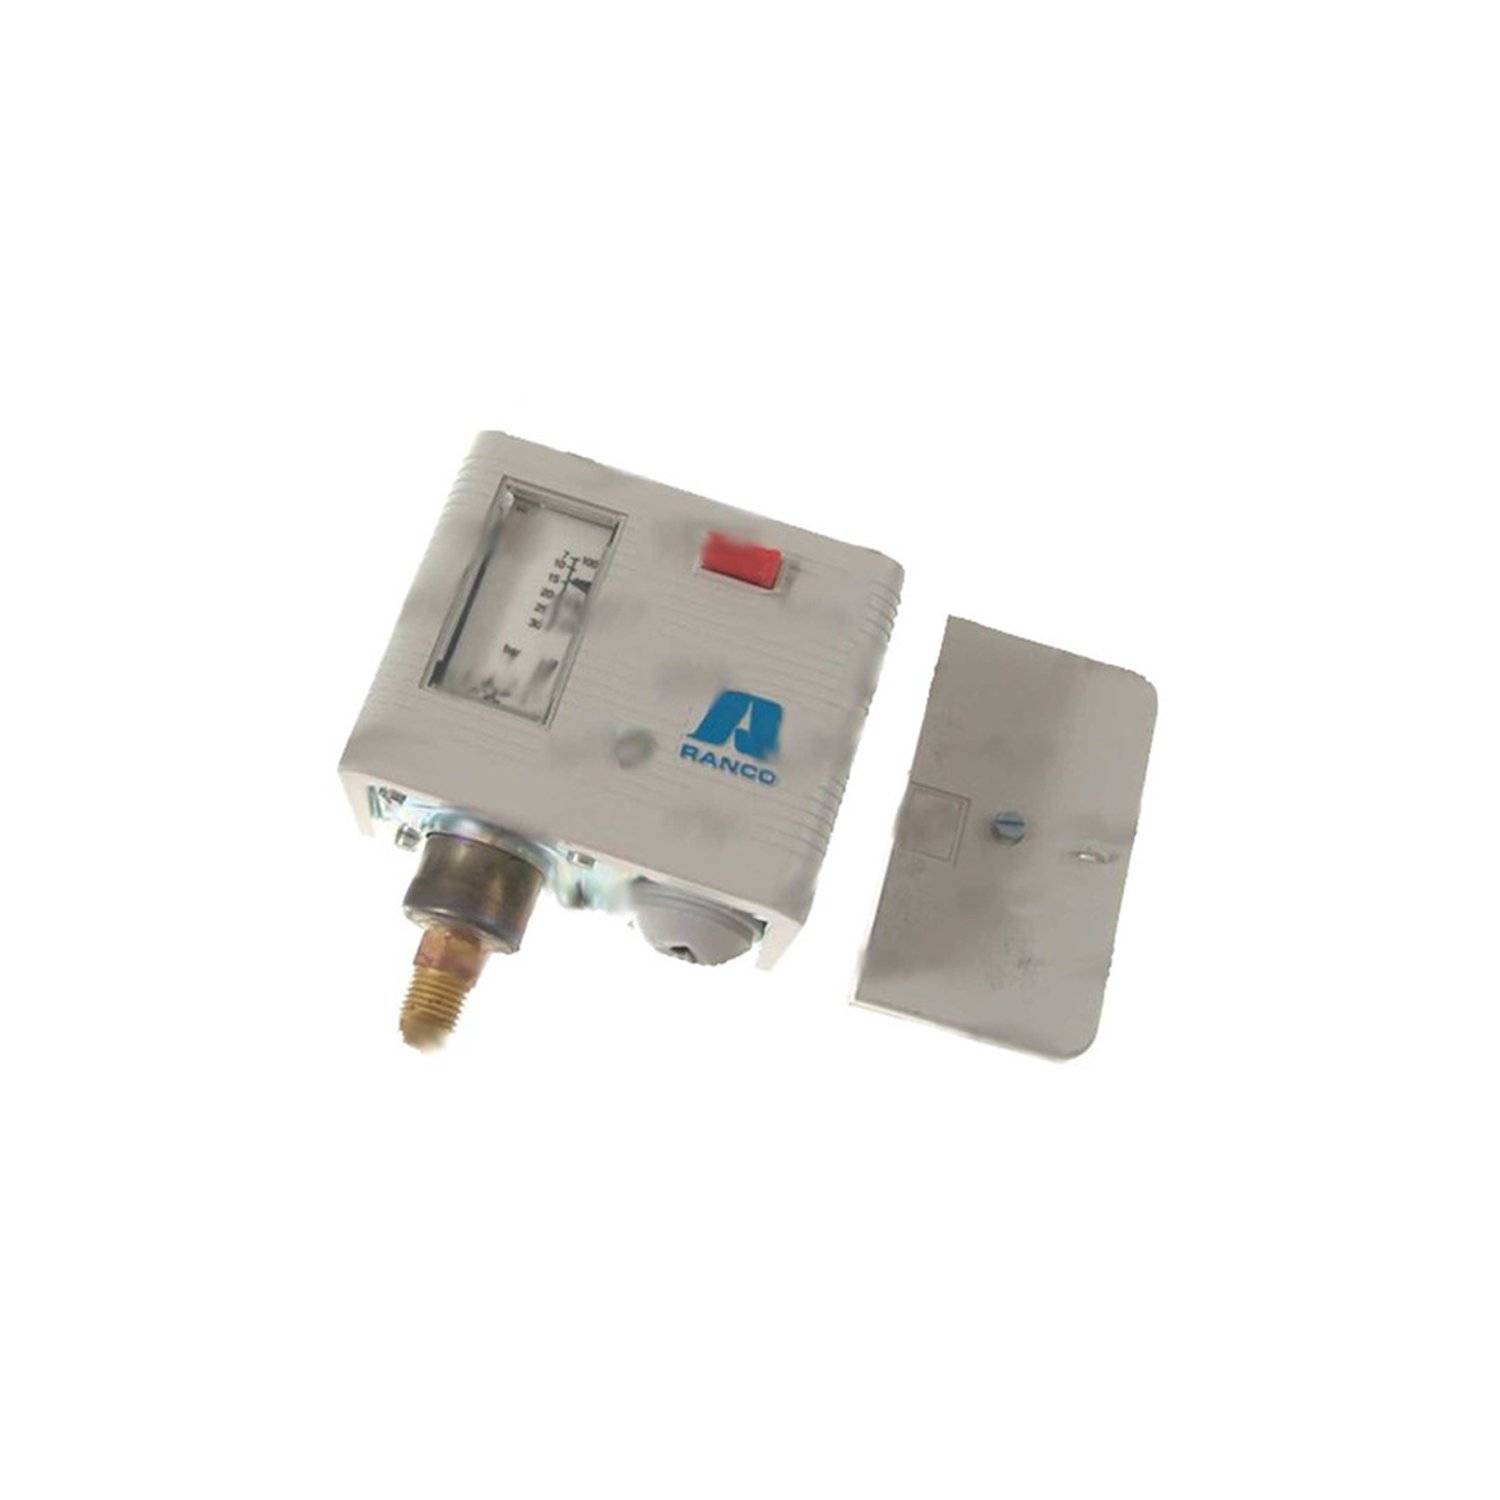 Pressure switch Ranco high pressure O16-H6759, 7-30 bar